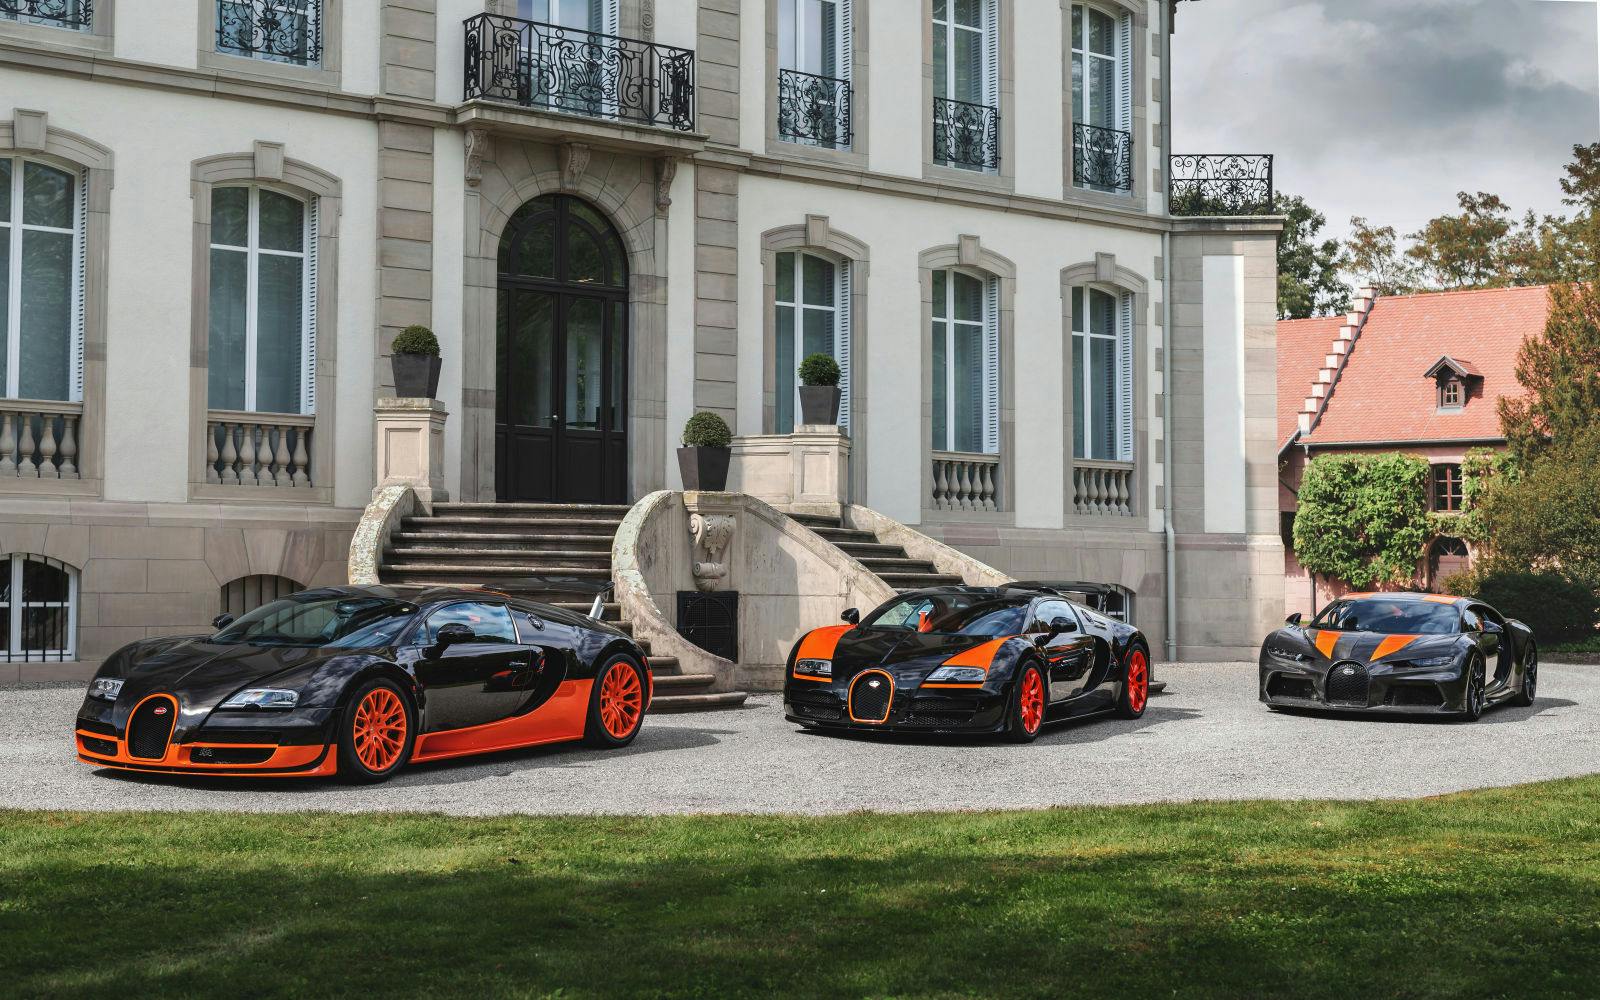 Les véhicules records Bugatti de l'ère moderne par ordre chronologique : Veyron 16.4 Super Sport (2010), Veyron 16.4 Grand Sport Vitesse (2013), Chiron Super Sport 300+ (2019).